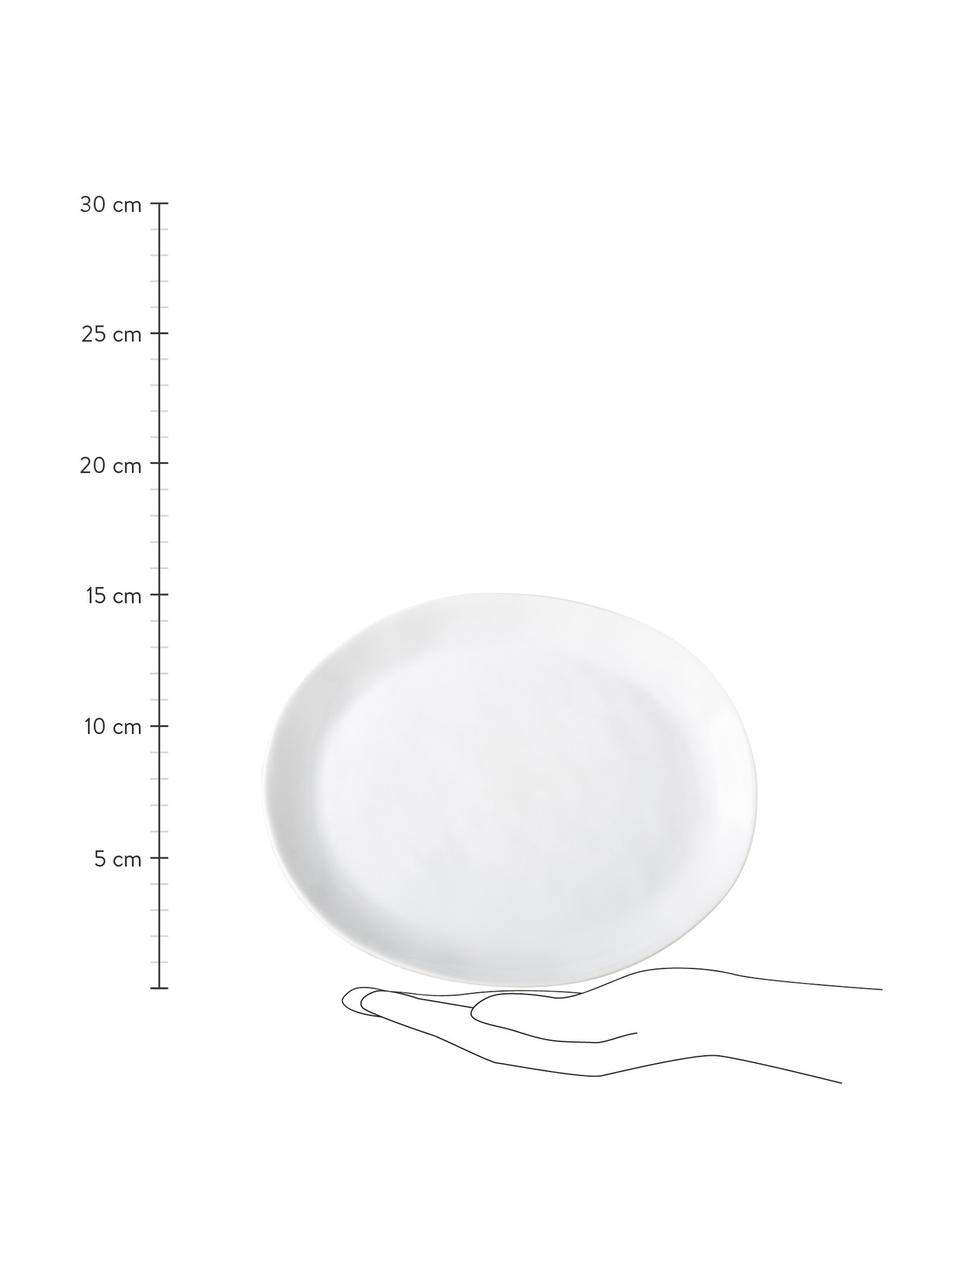 Owalny talerz śniadaniowy Porcelino, 4 szt., Porcelana o celowo nierównym kształcie, Biały, D 23 x S 19 cm